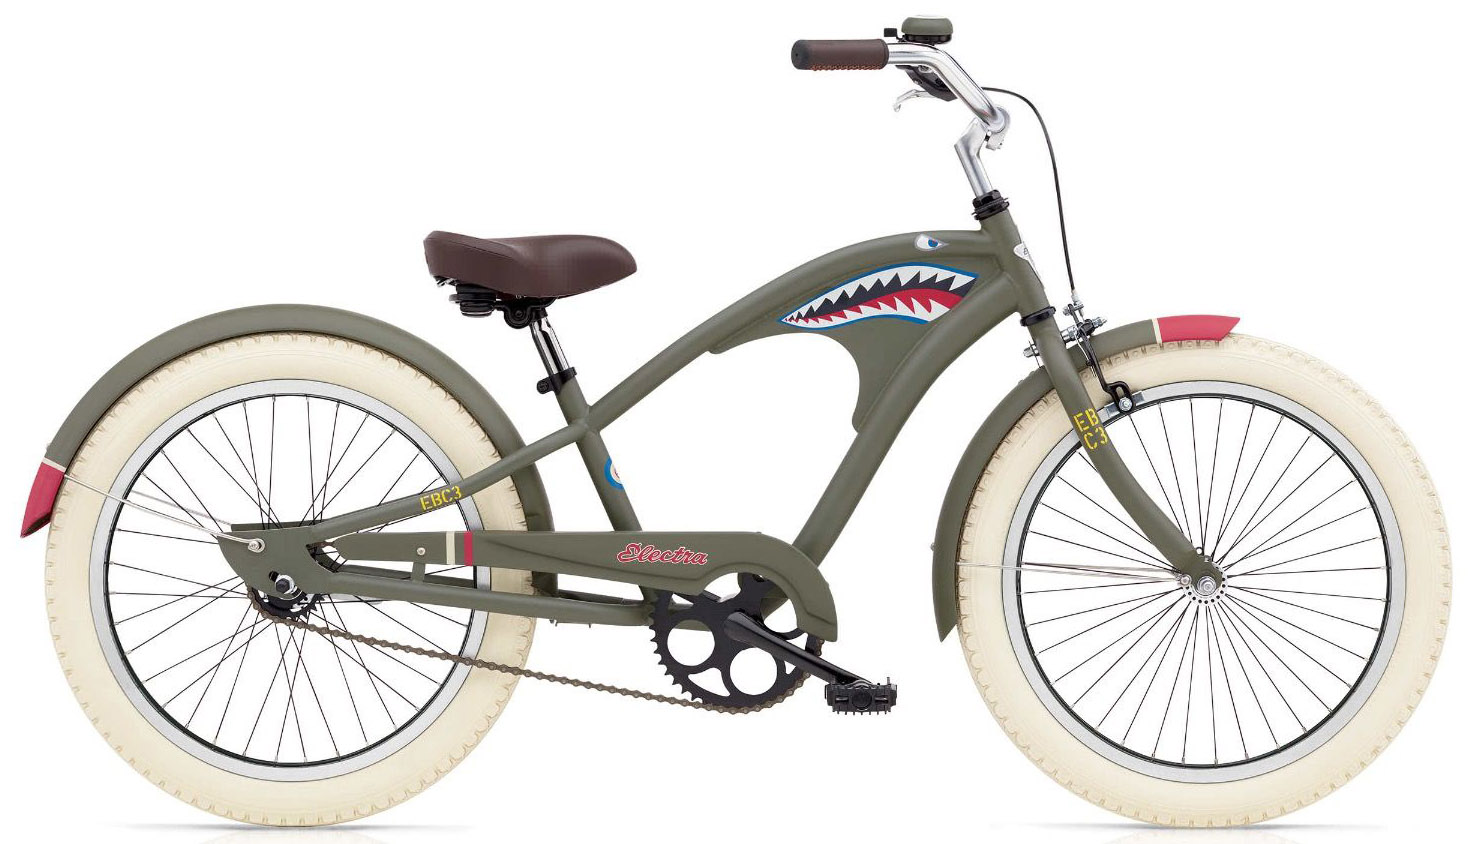  Отзывы о Детском велосипеде Electra Tiger Shark 1 20 2020